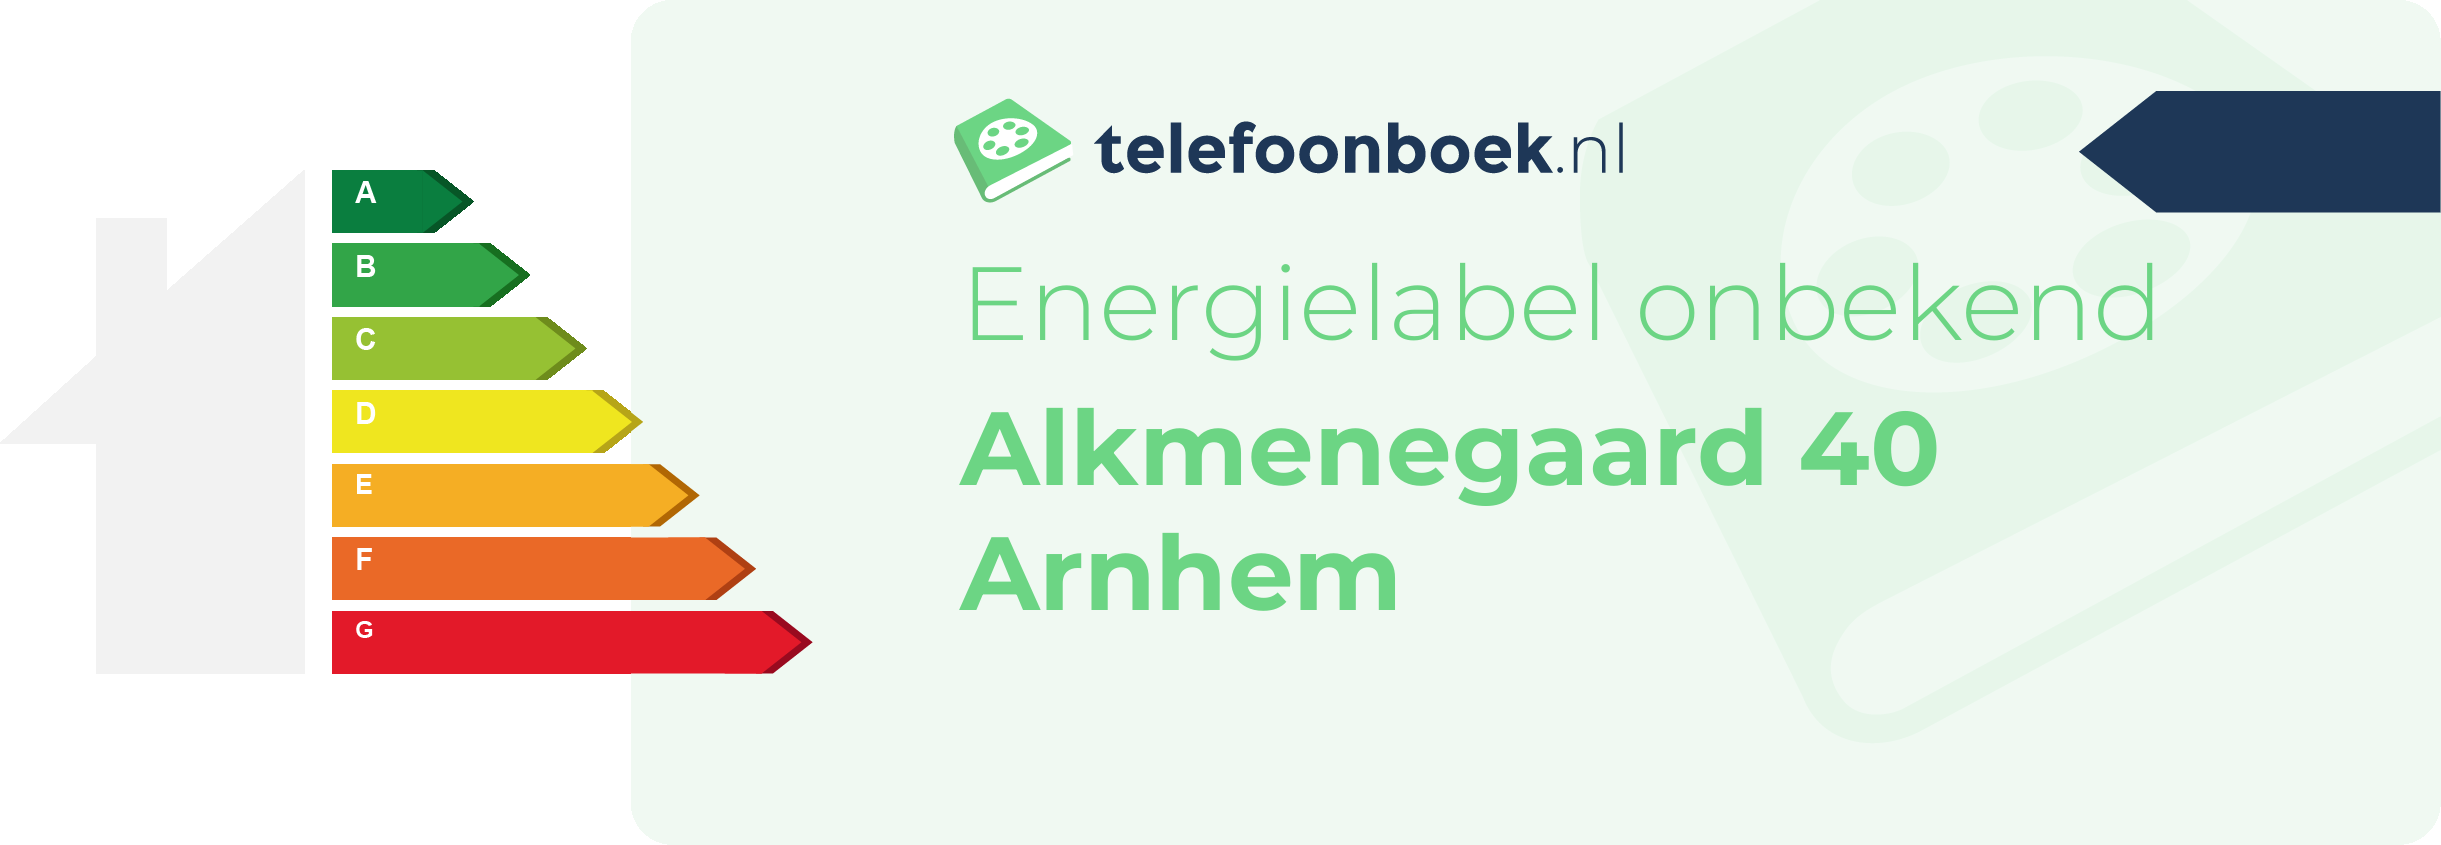 Energielabel Alkmenegaard 40 Arnhem